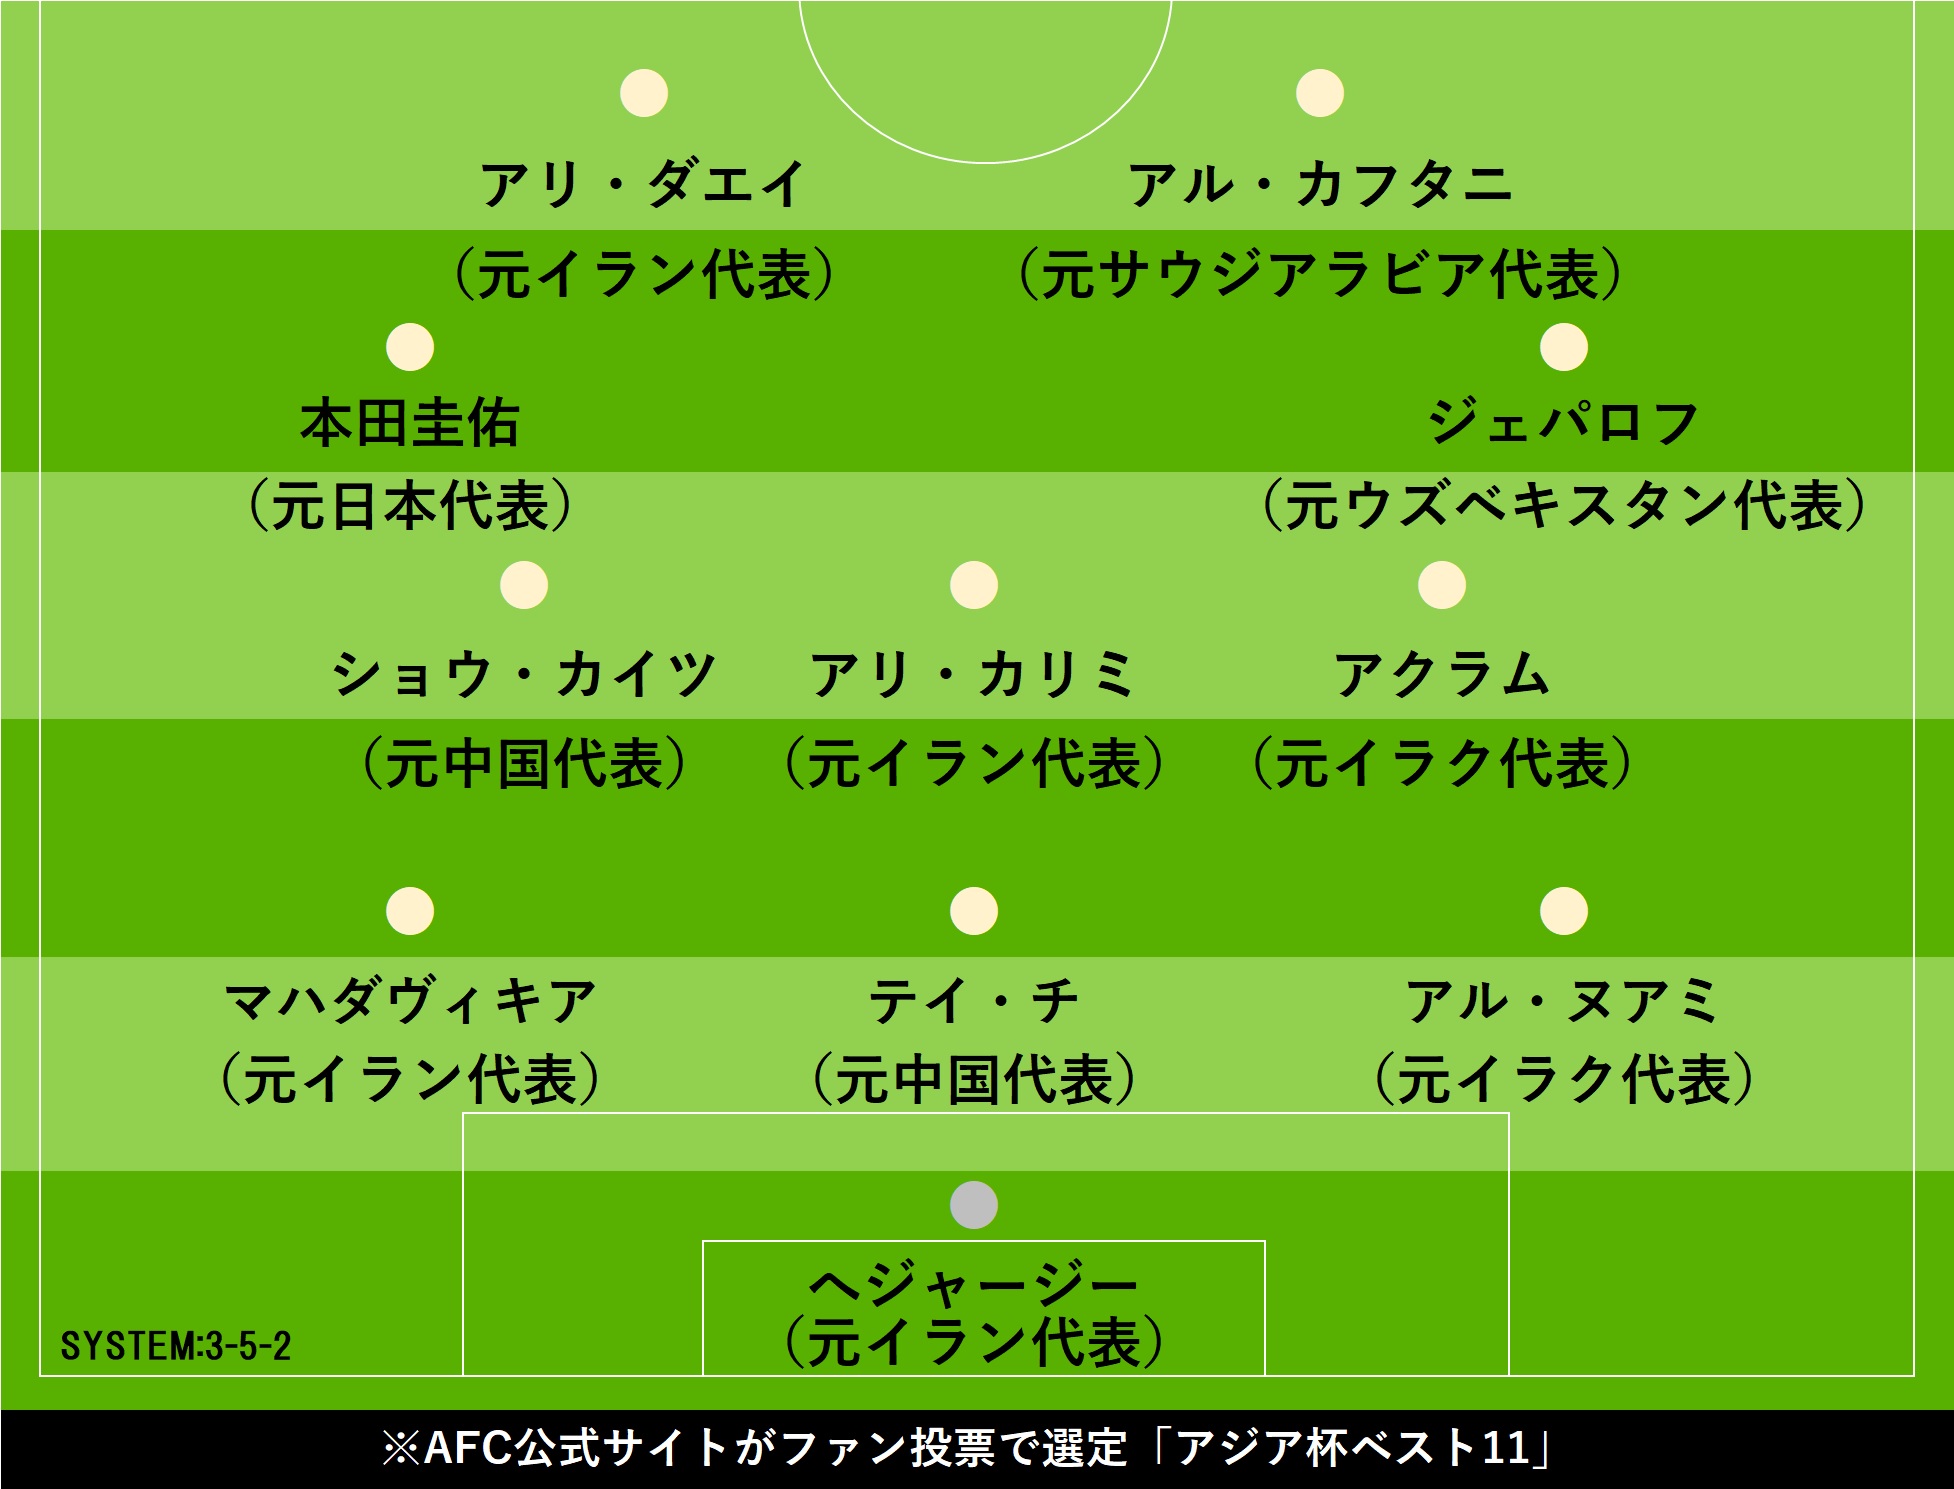 アジア杯歴代ベスト11 本田圭佑が日本人唯一の選出 最も認知度の高い選手 フットボールゾーン 2